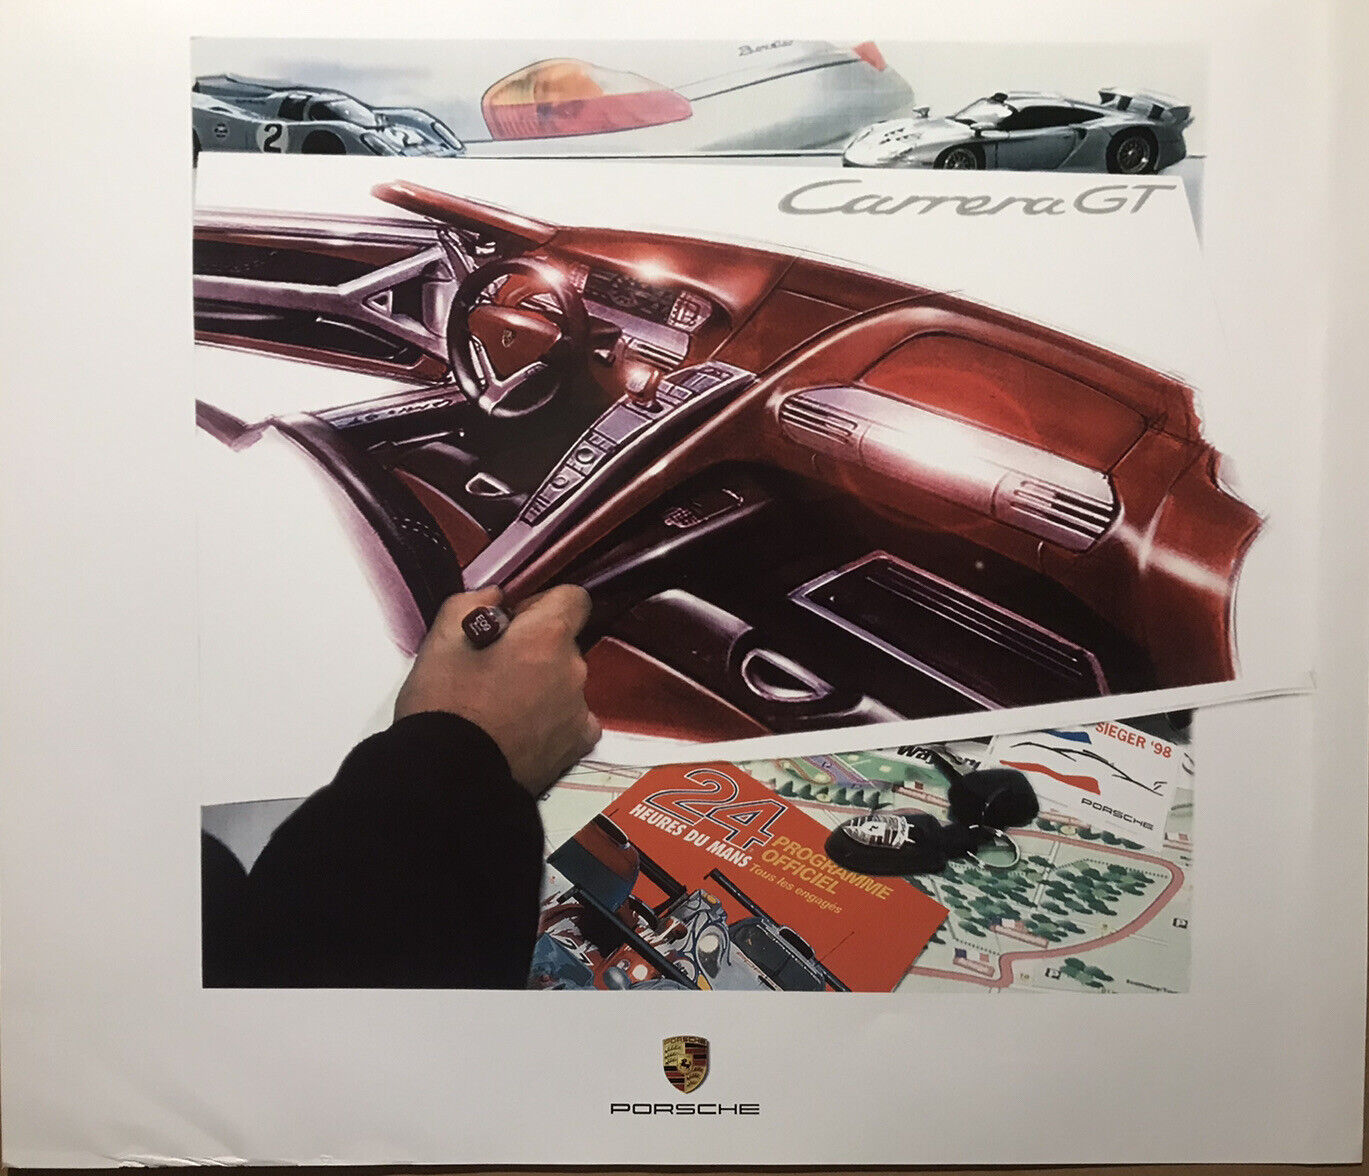 Porsche Carrera GT - Design Series Original Factory Car Poster Own It